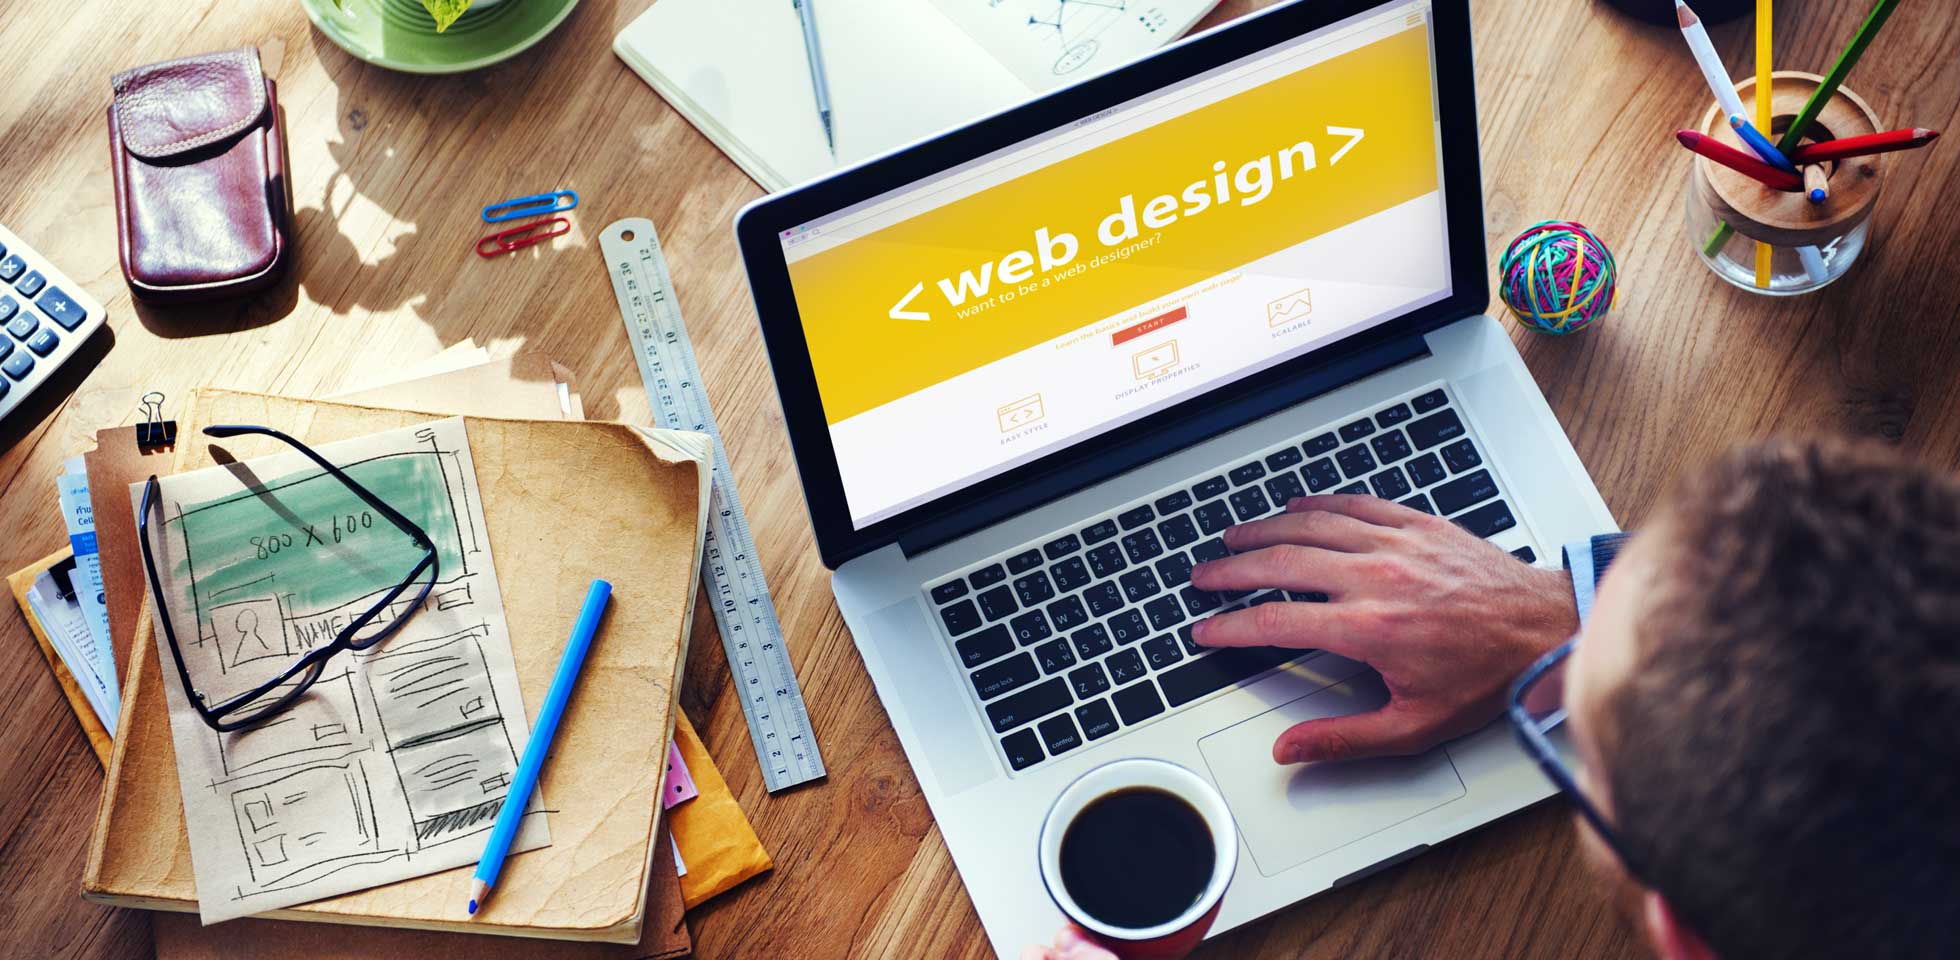 Thiết kế cuộn trang – tăng trải nghiệm khách hàng trên website